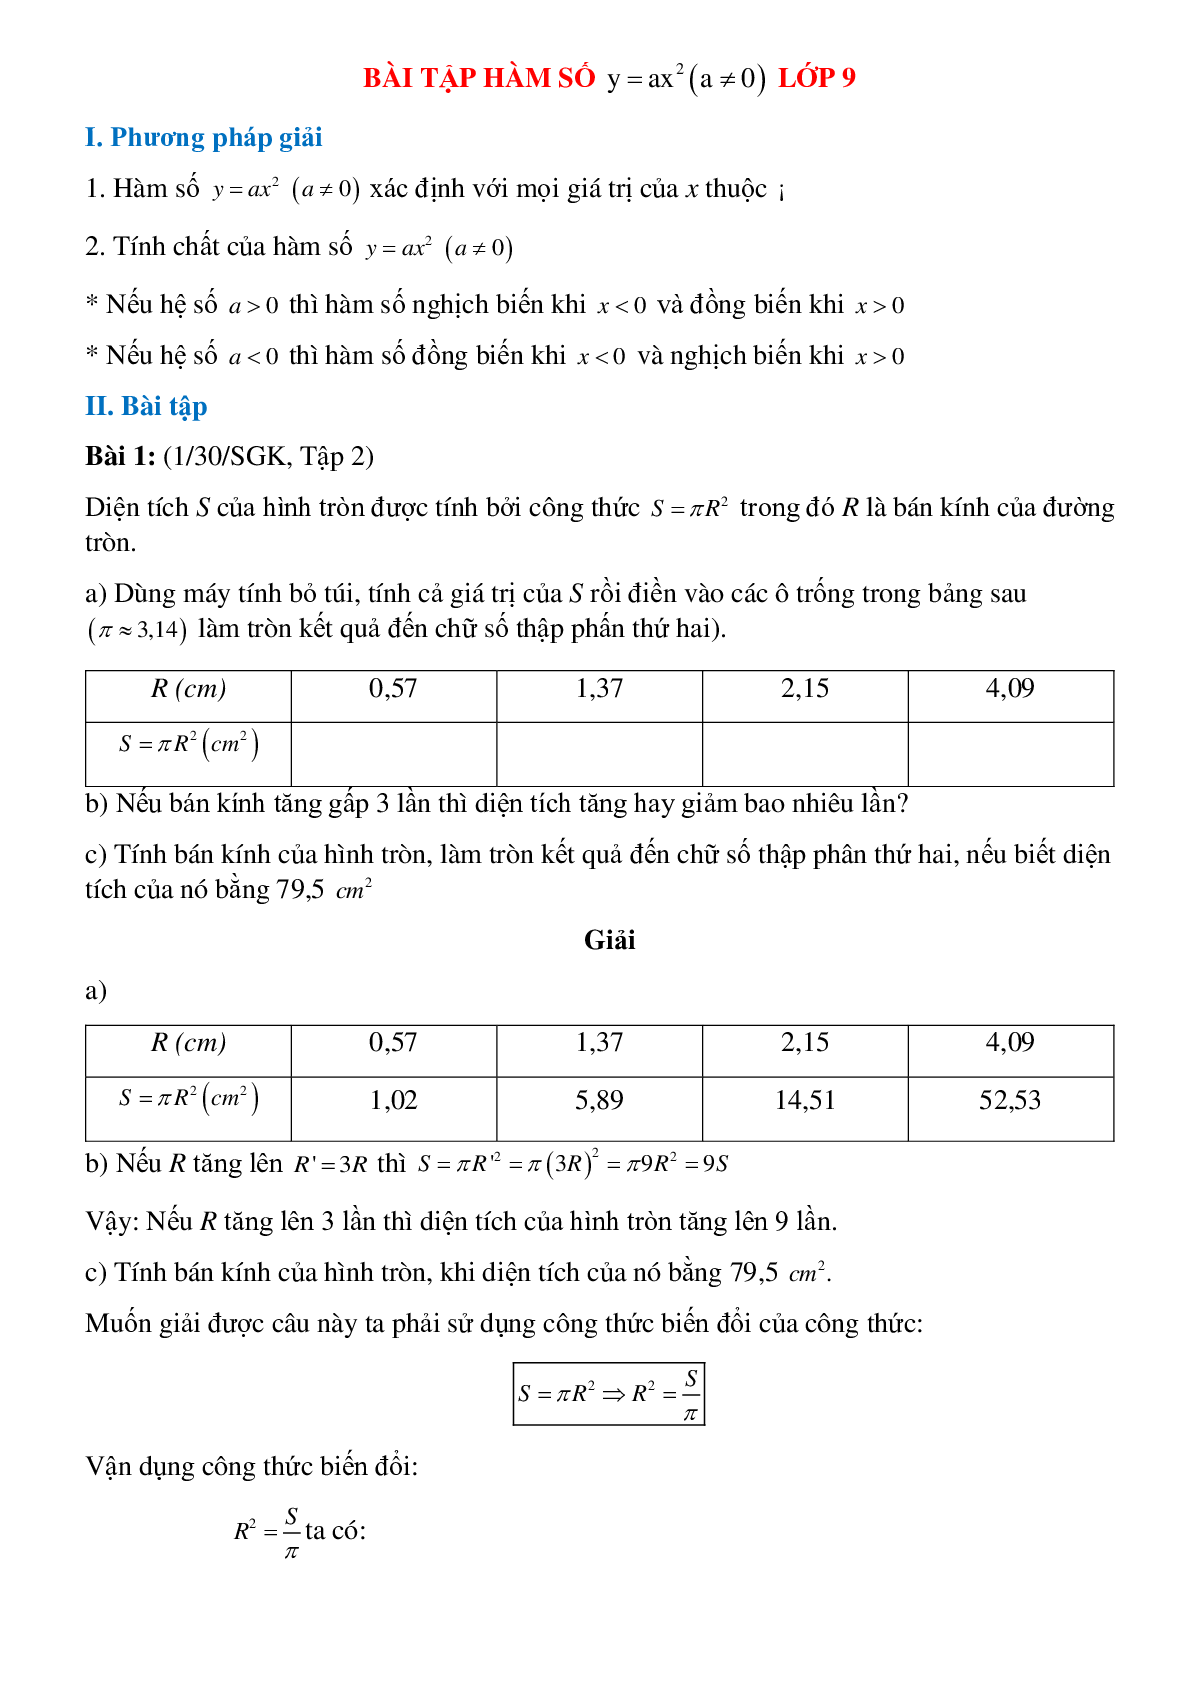 50 Bài tập Hàm số y = ax^2 (có đáp án)- Toán 9 (trang 1)